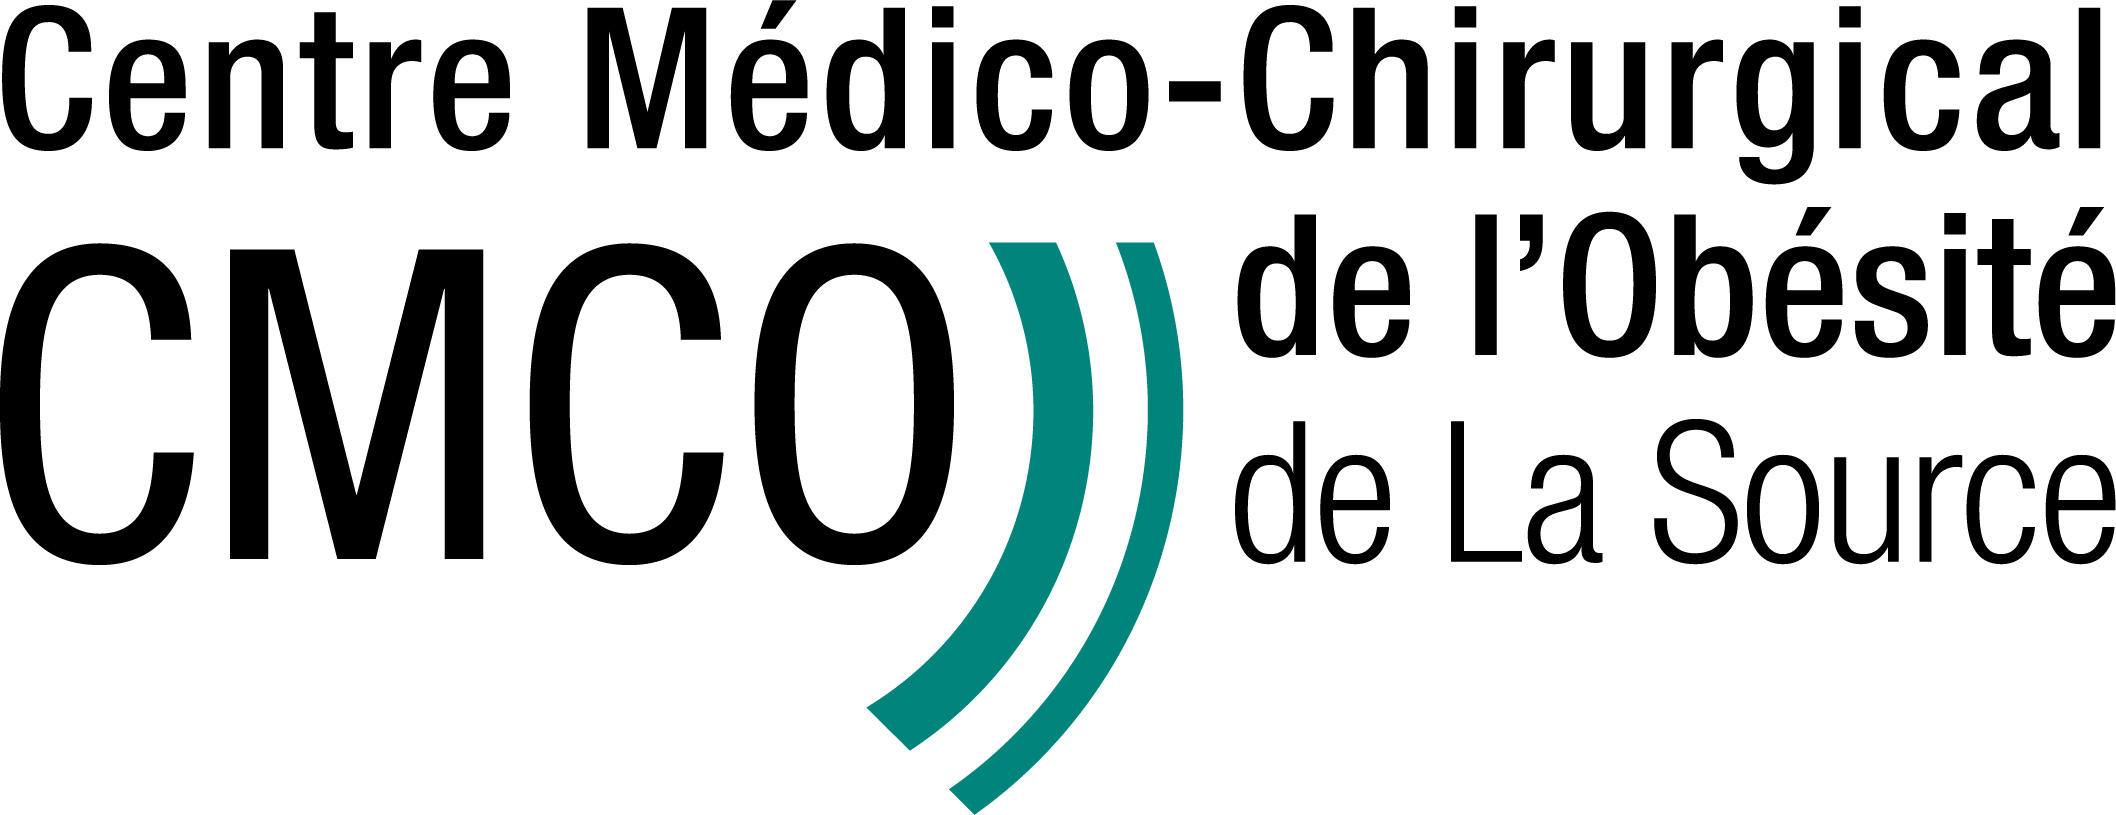 CMCO logo